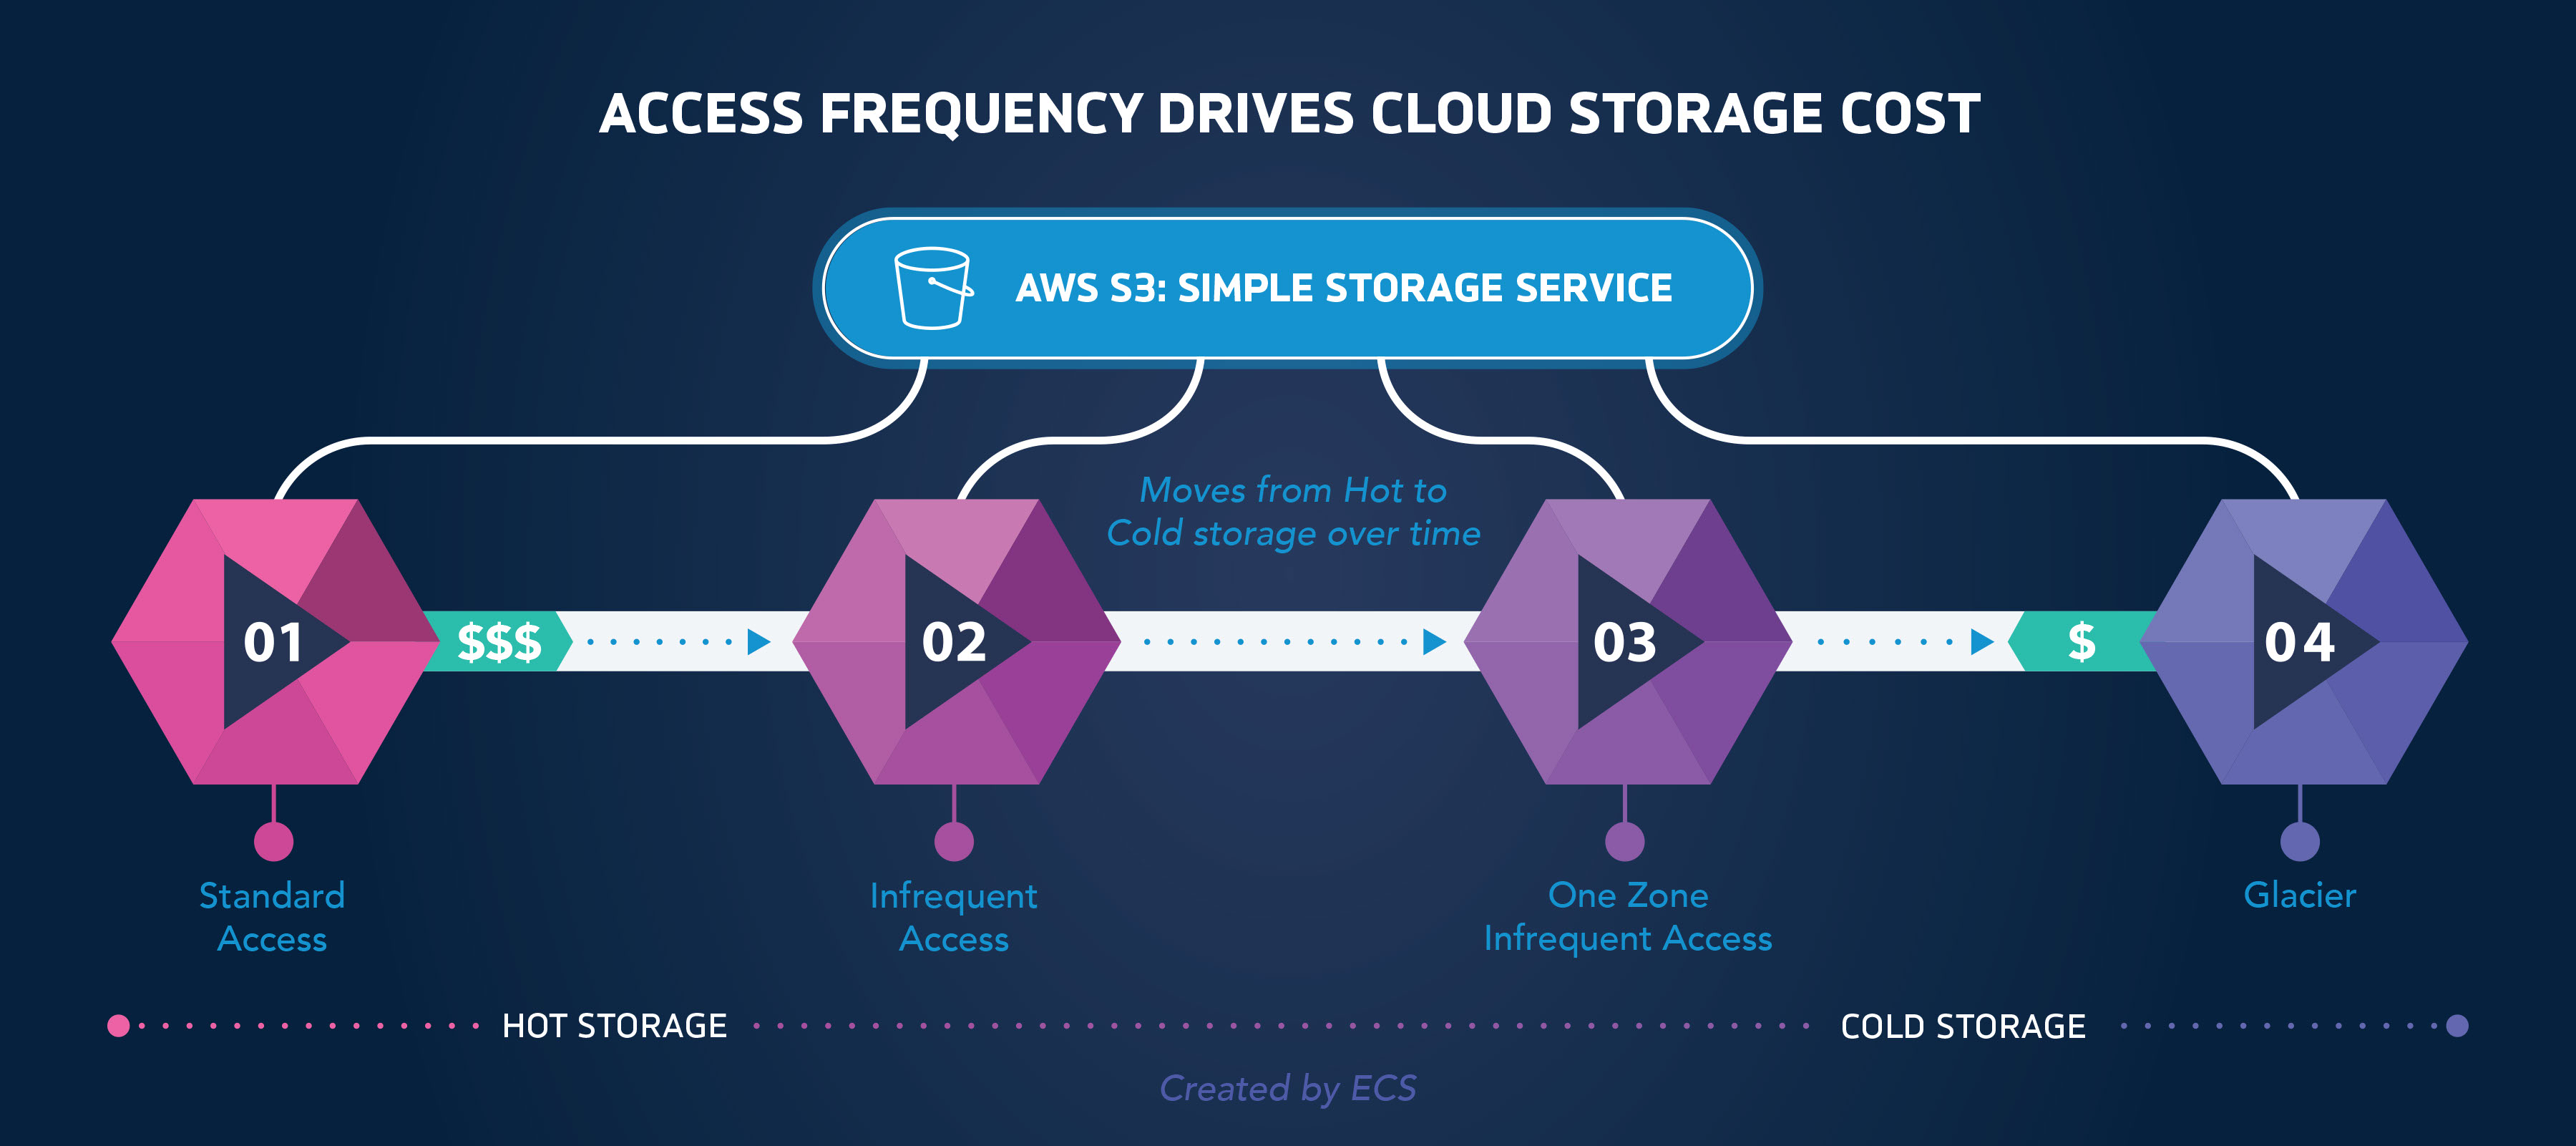 AWS S3 storage service workflow